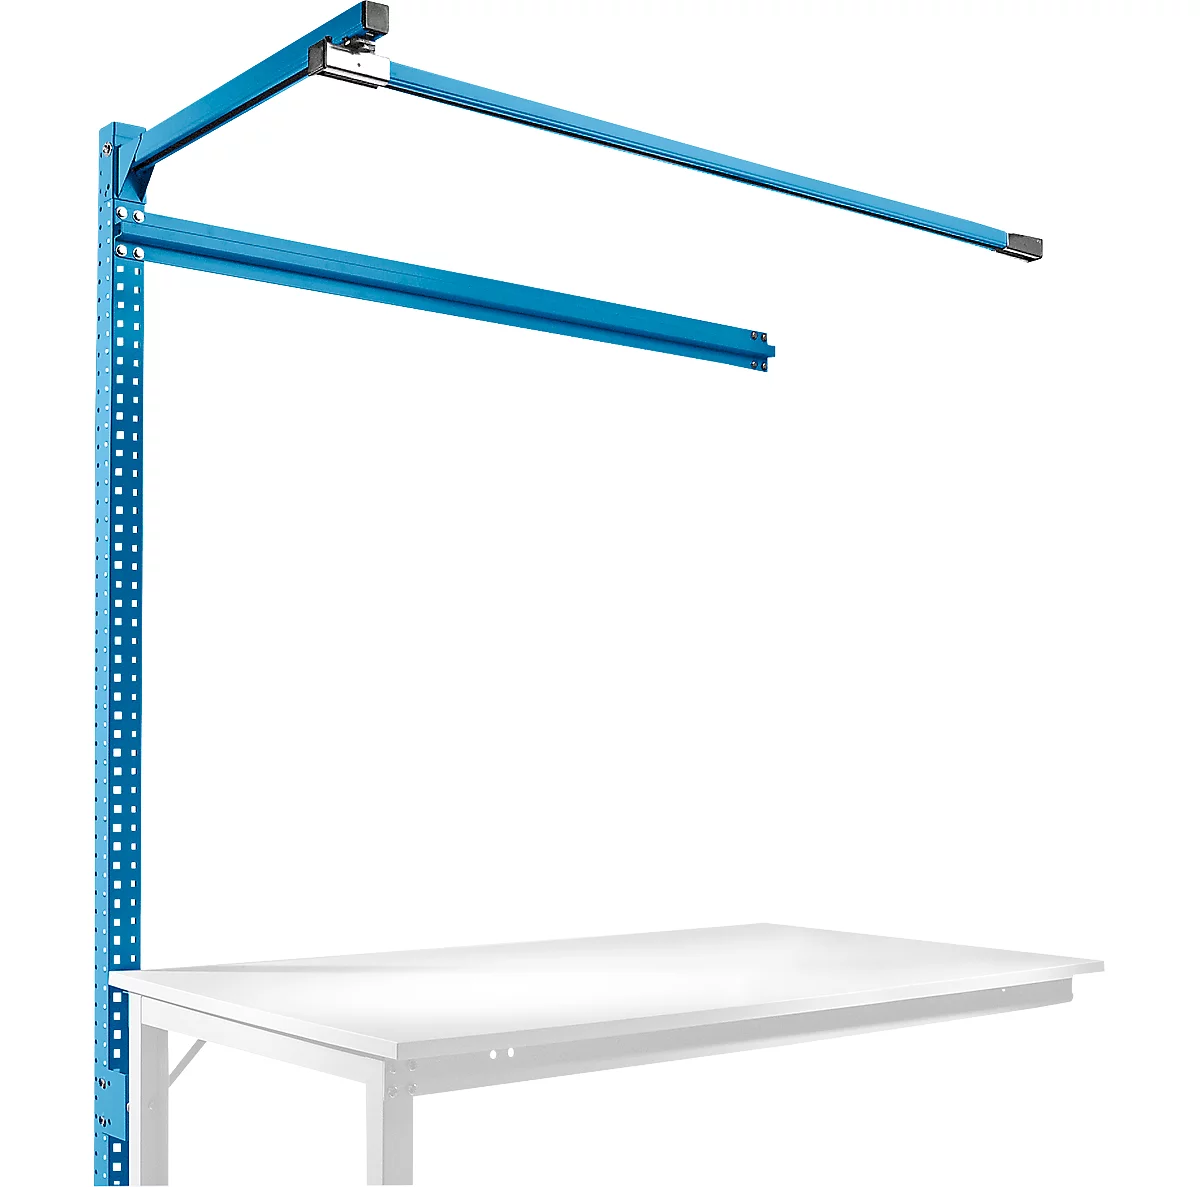 Estructura pórtica adicional con brazo saliente, Mesa de extensión SPEZIAL mesa de trabajo/banco de trabajo UNIVERSAL/PROFI, 1500 mm, azul luminoso